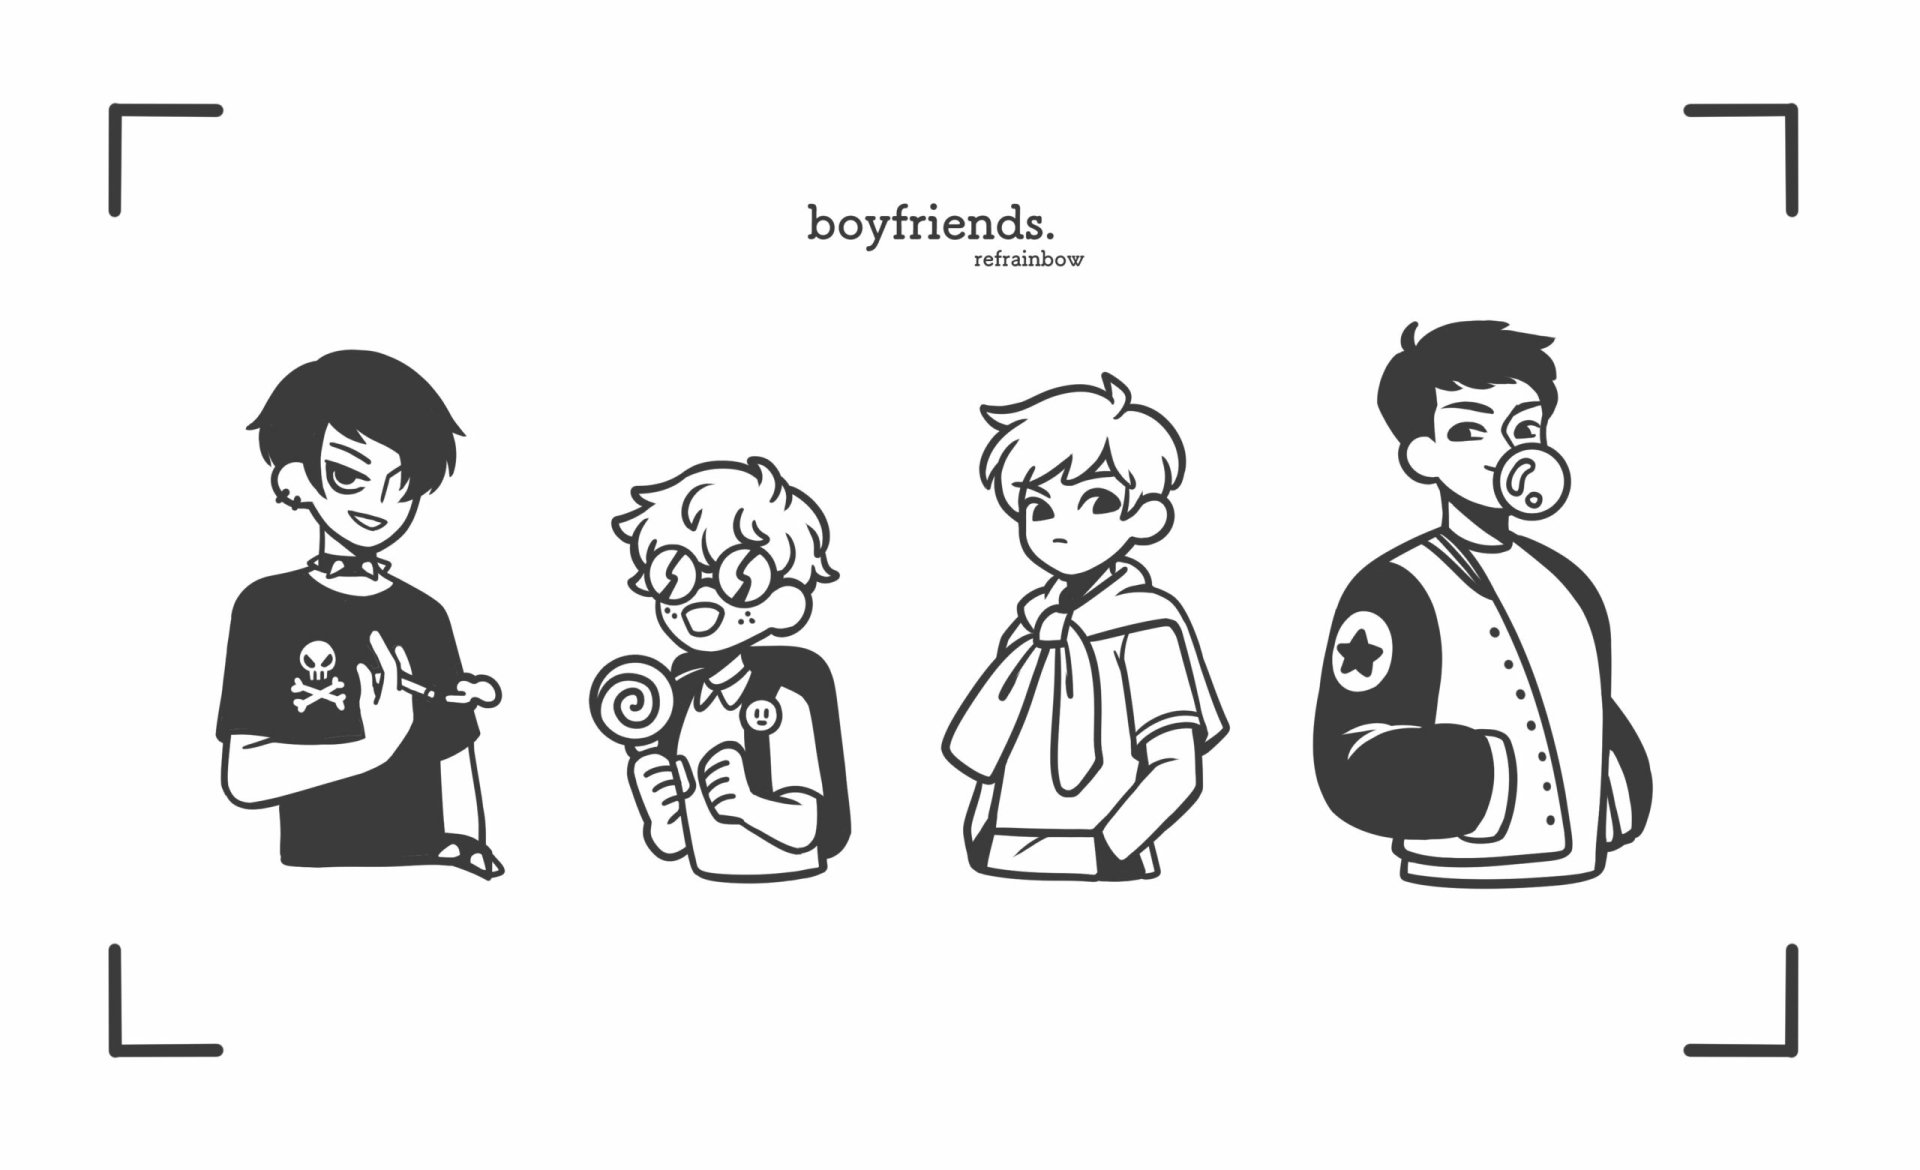 110 Boyfriend WEBTOON ideas  webtoon boyfriend webtoon comics